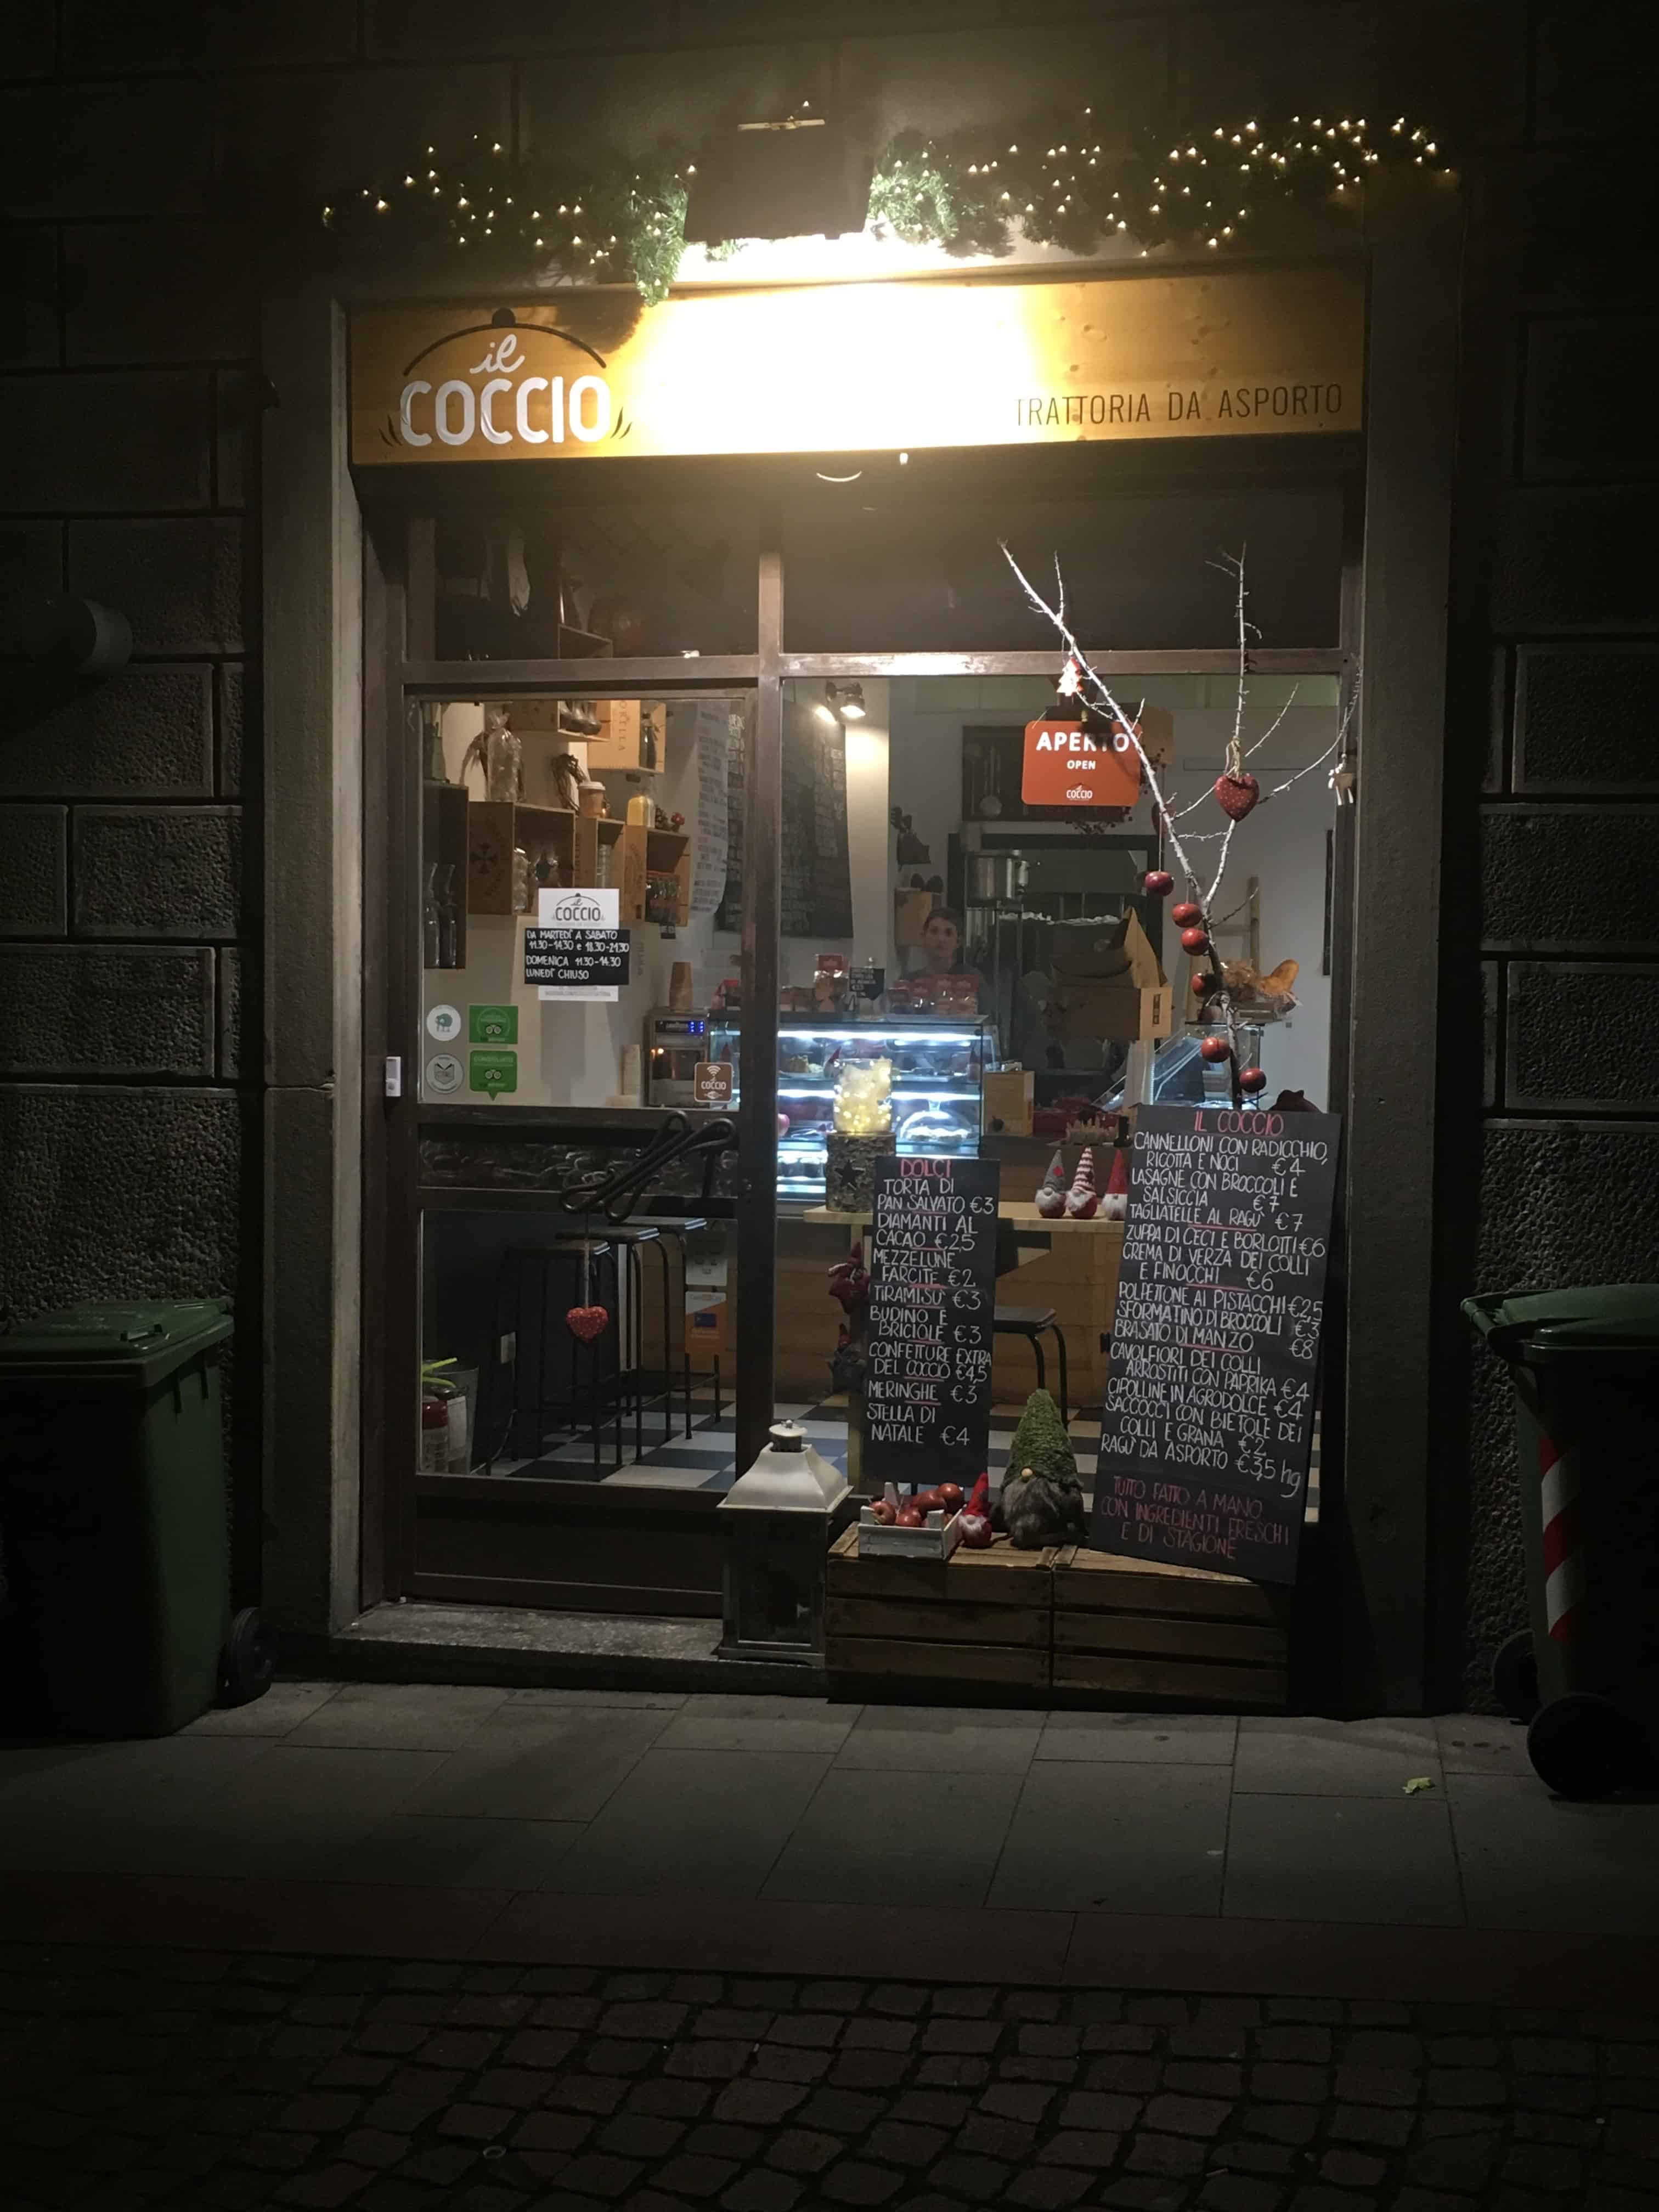 Il Coccio in Bergamo, Italy